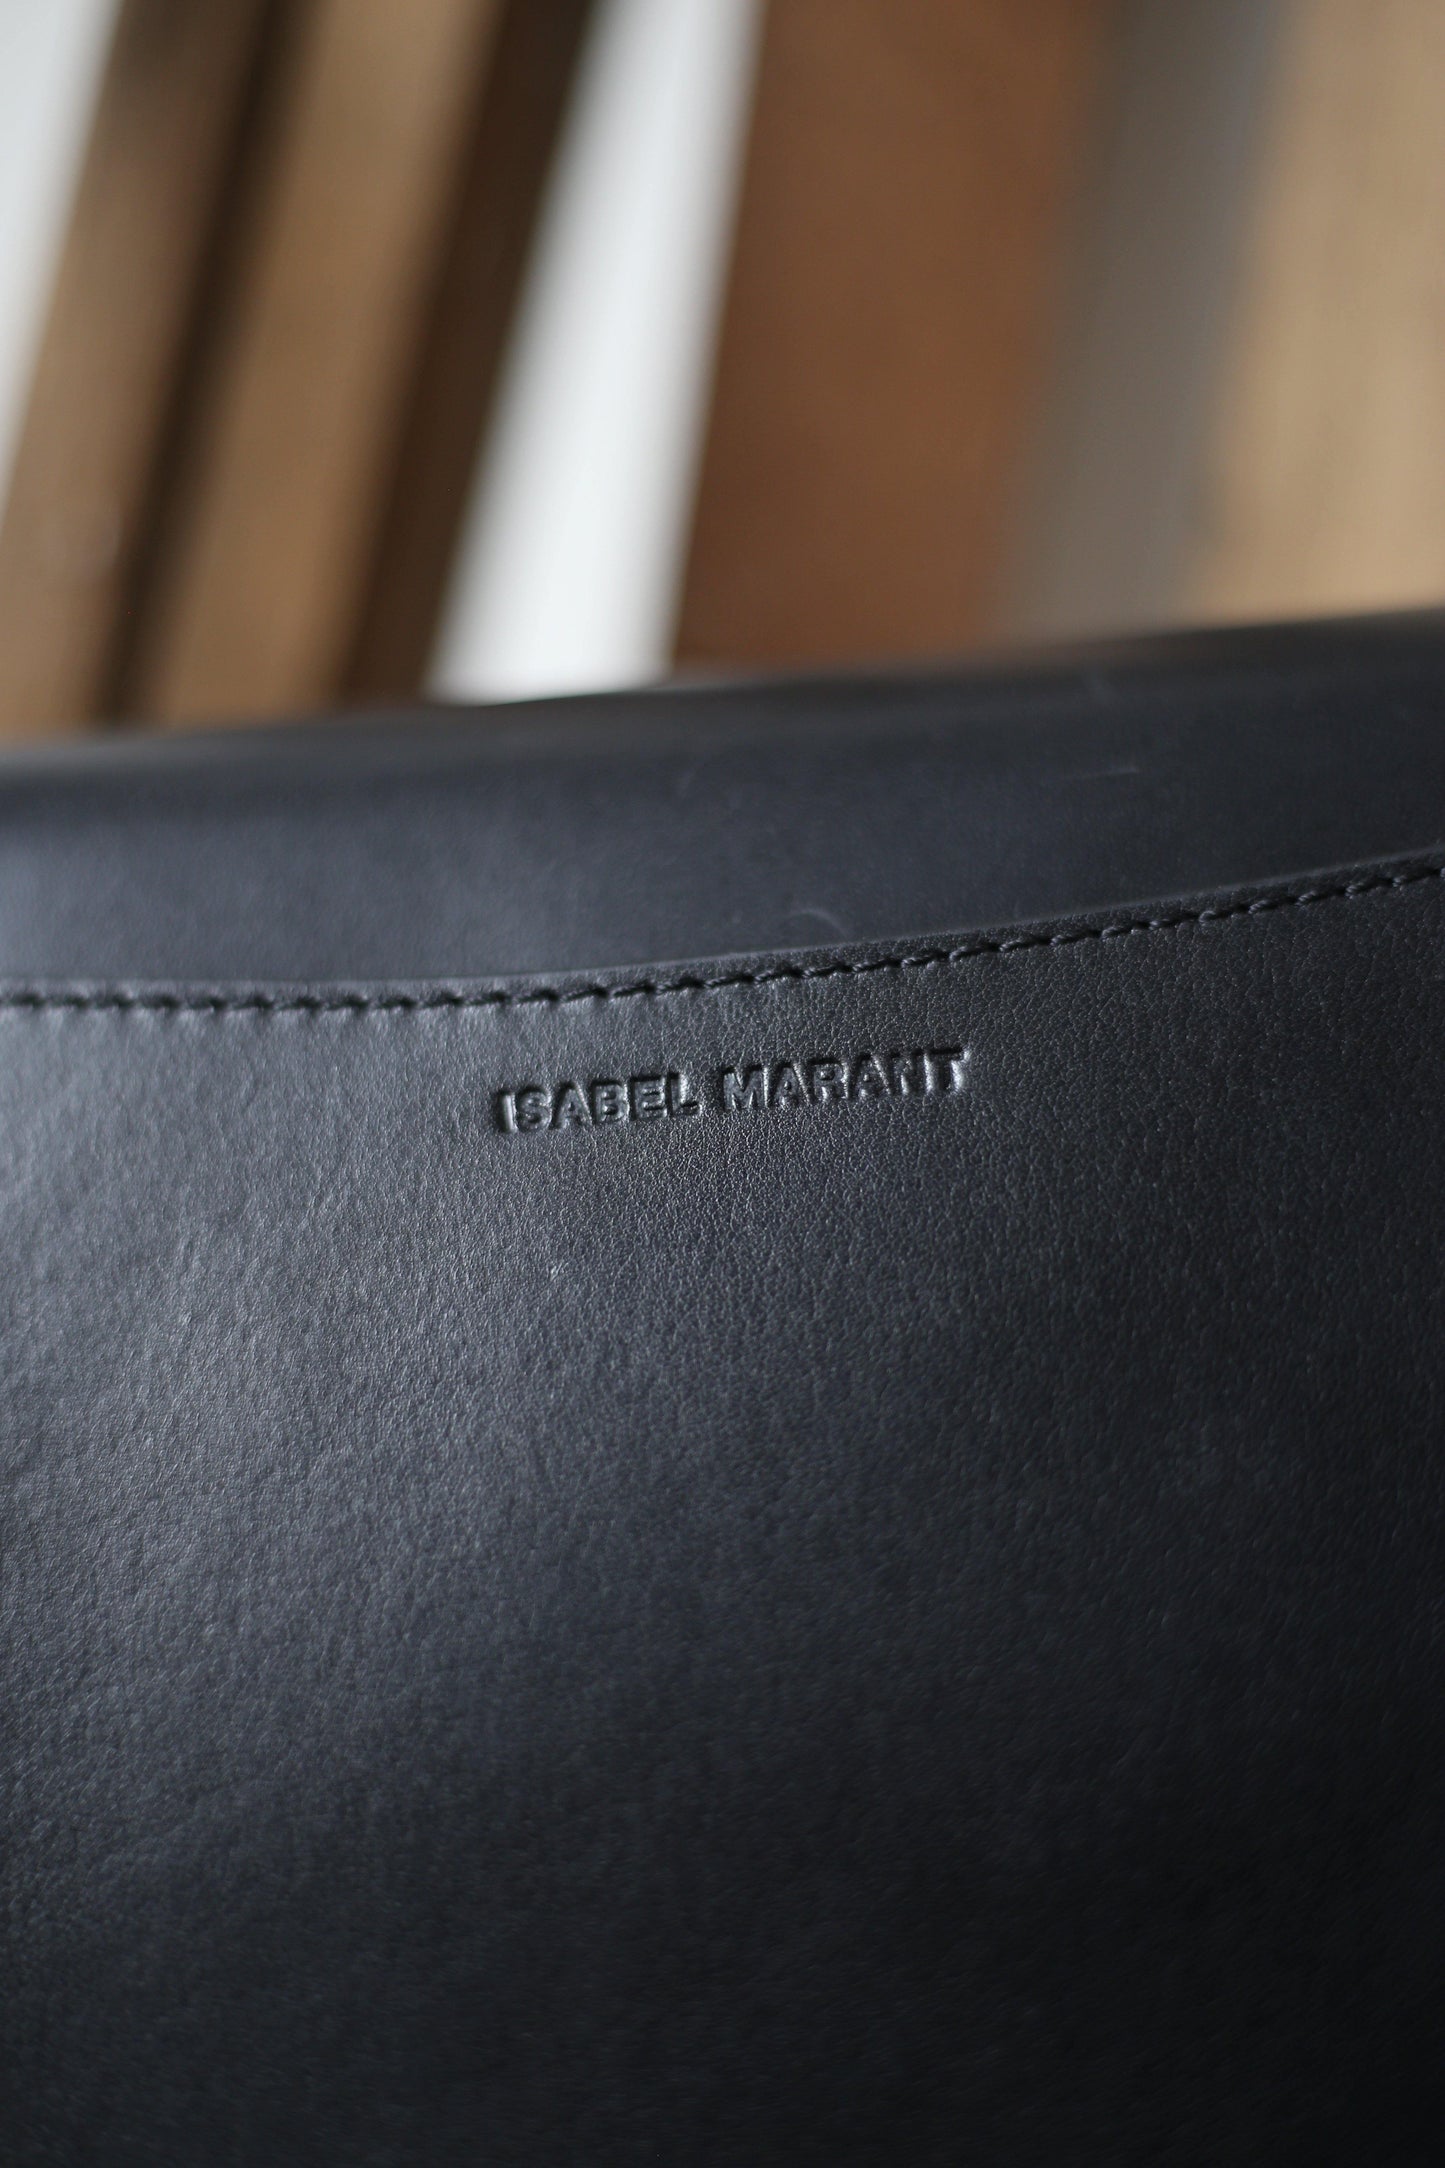 isabel marant skano studded black leather bag